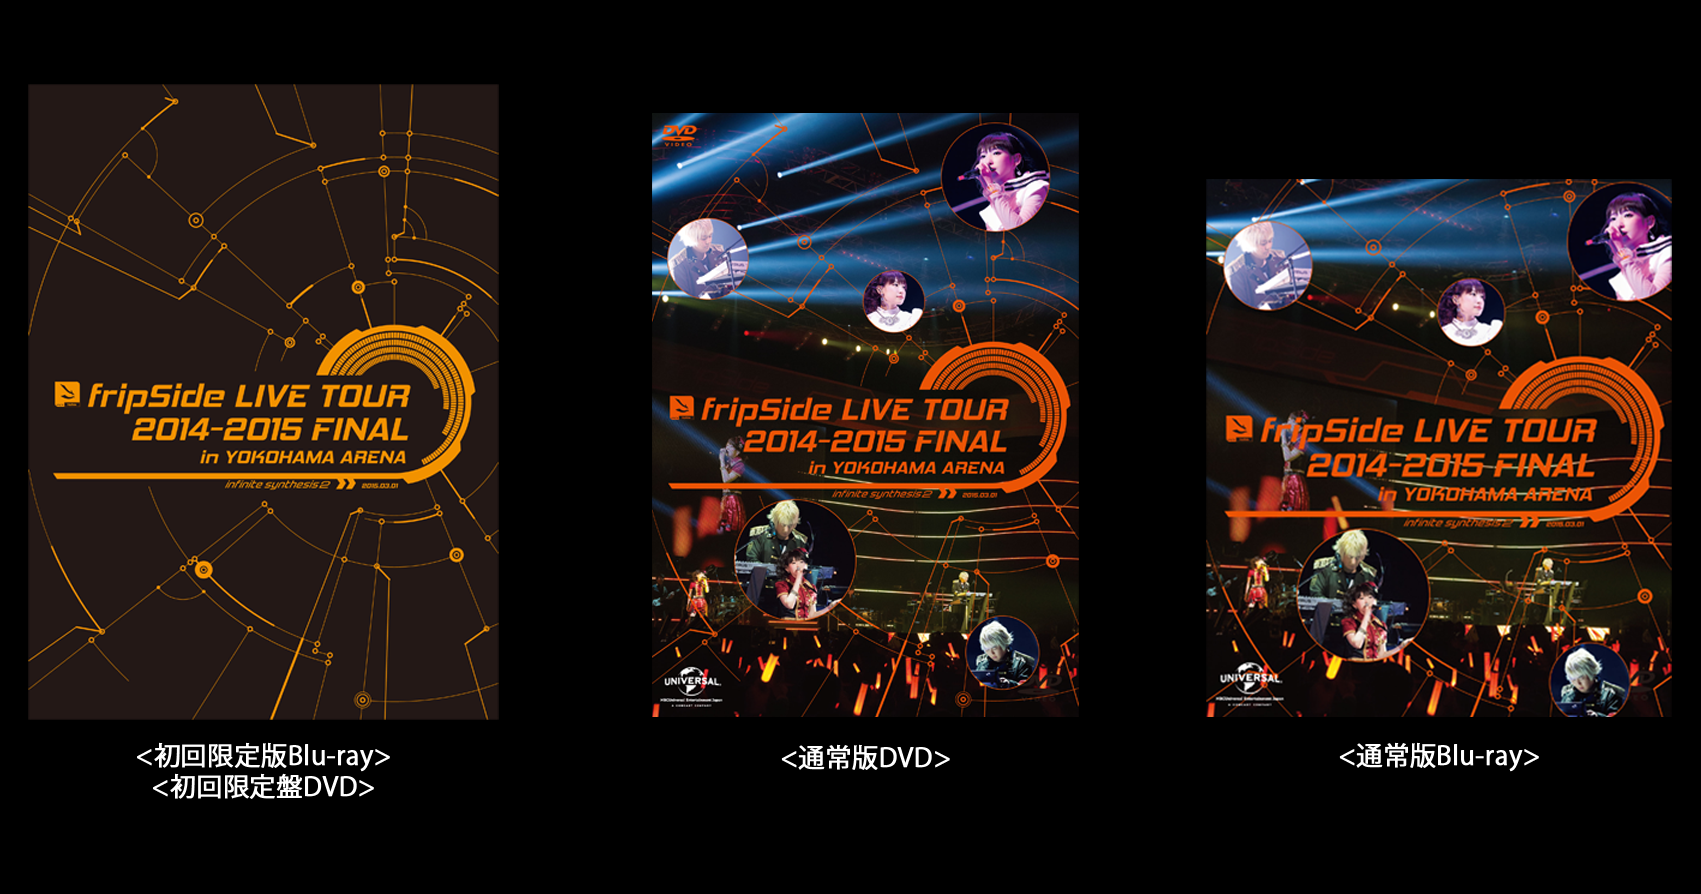 Blu-ray/DVD】「fripSide LIVE TOUR 2014-2015 FINAL in YOKOHAMA 